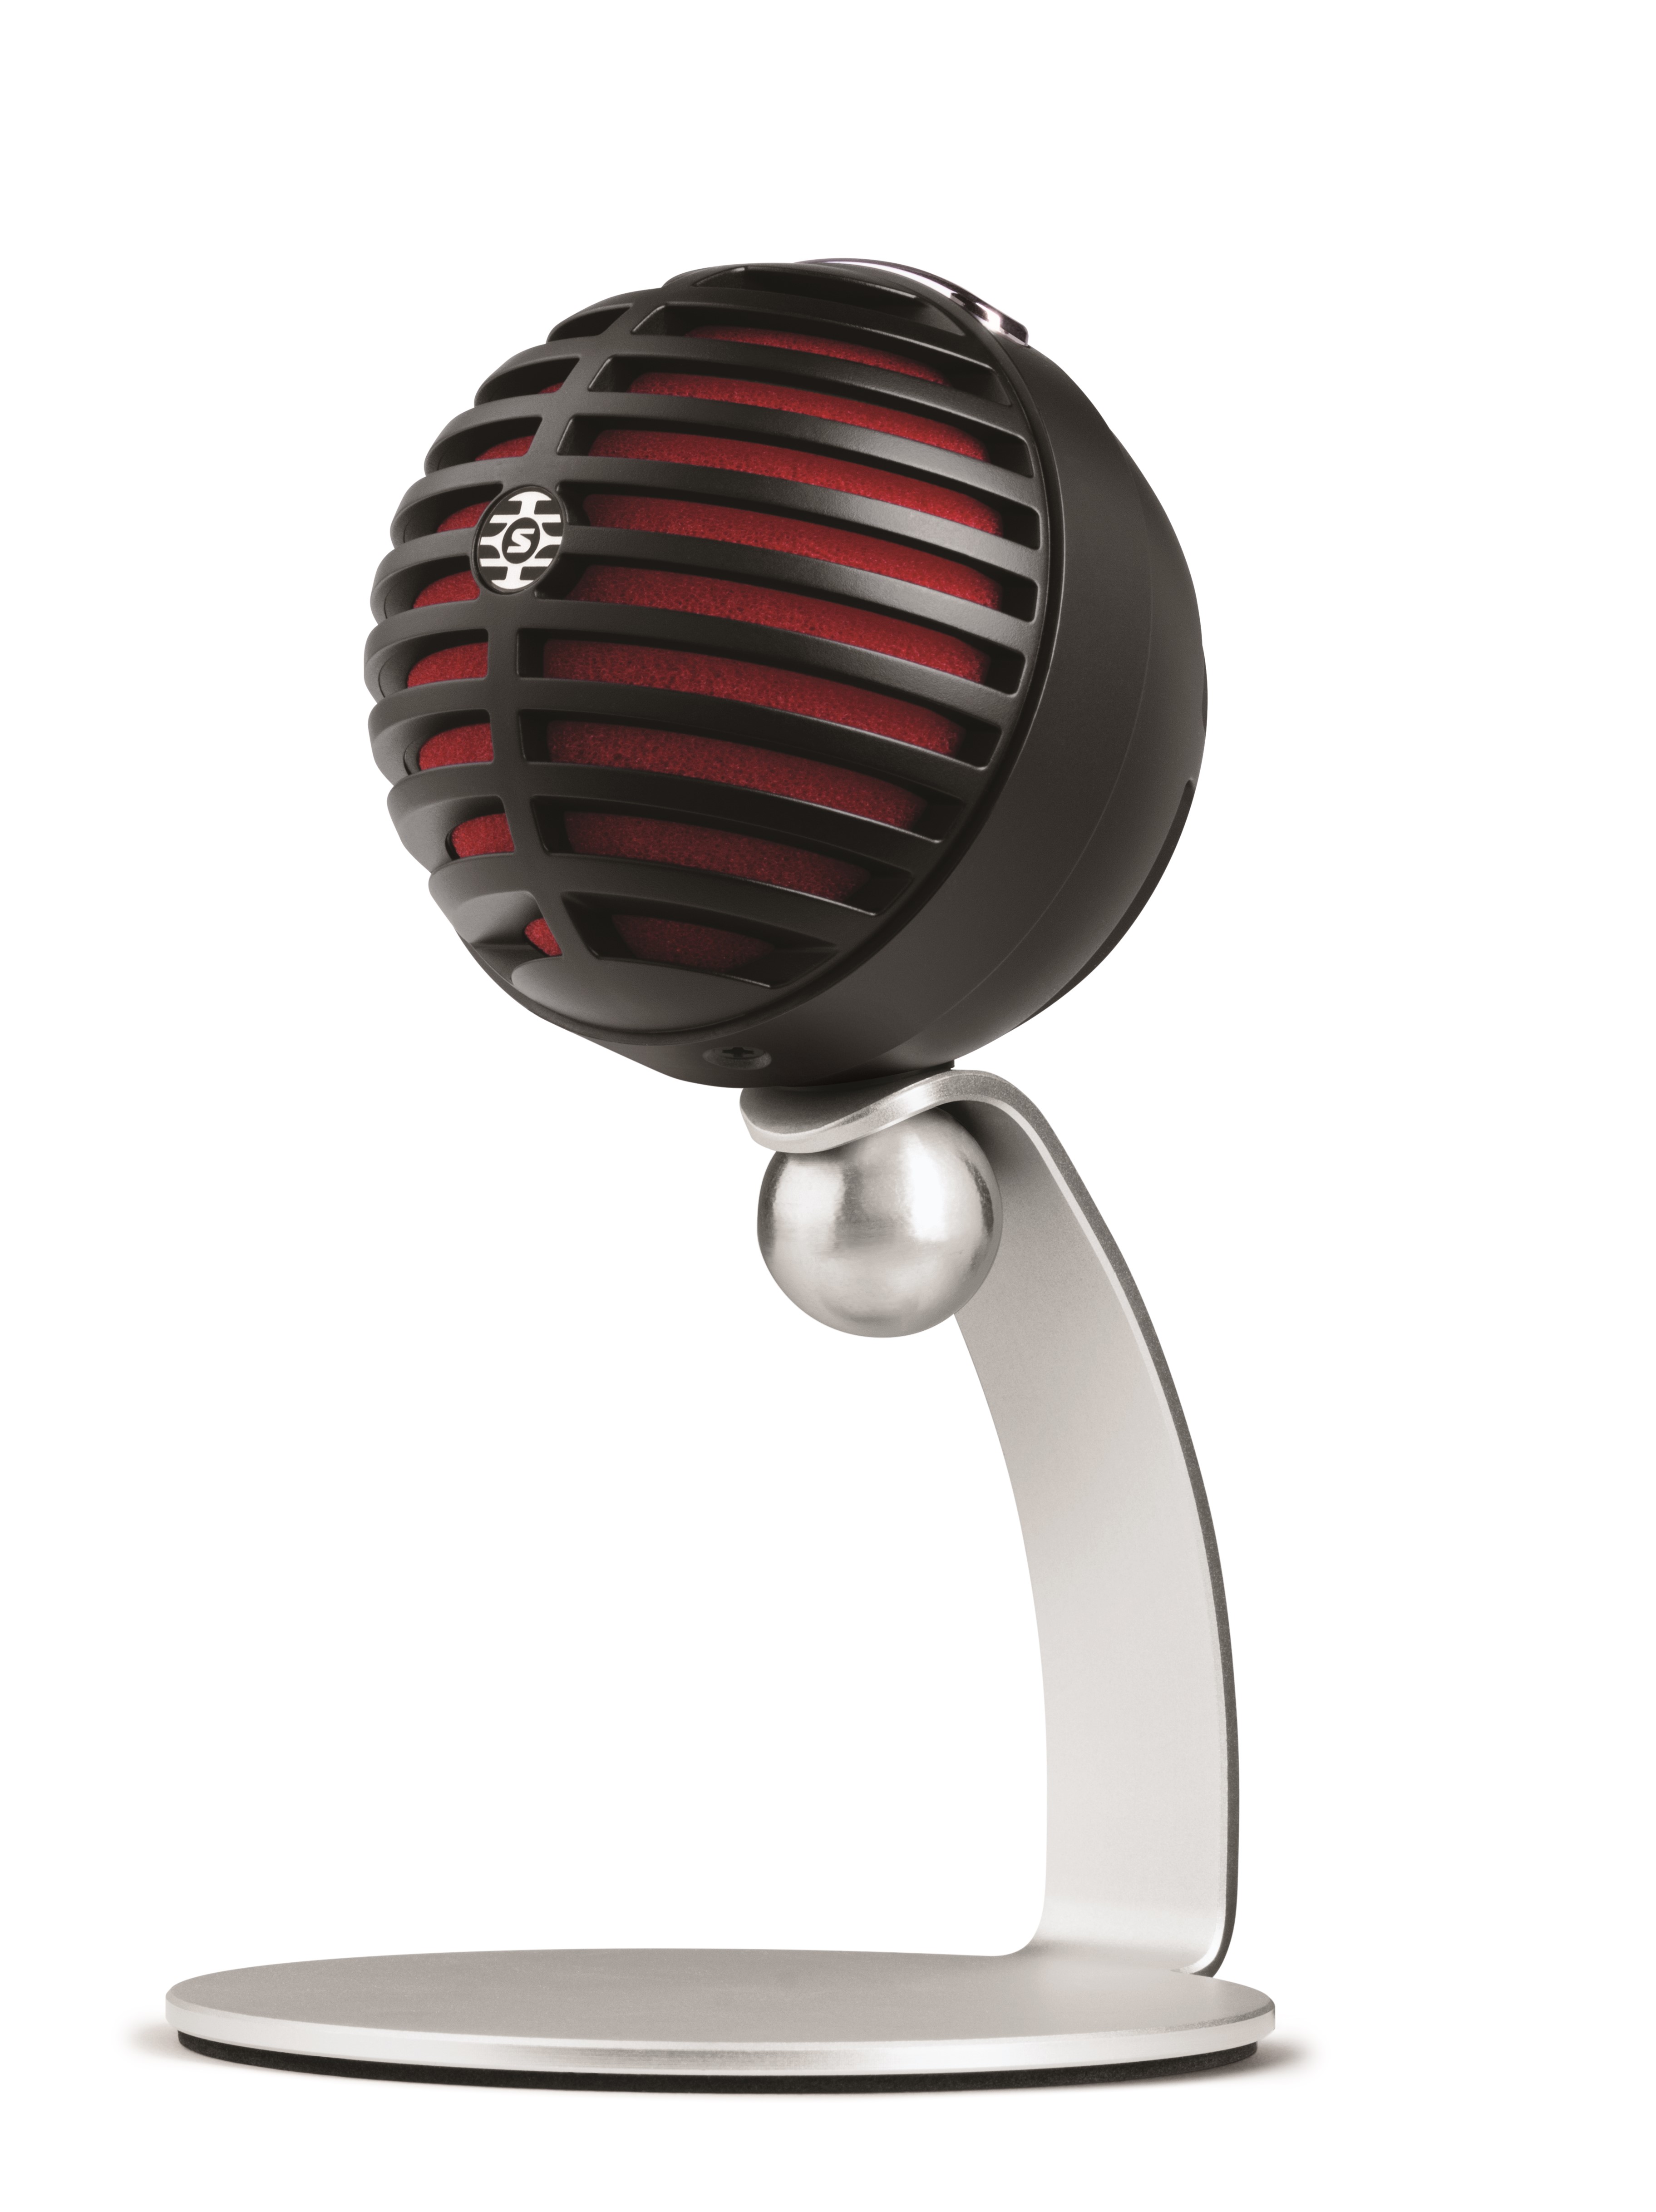 SHURE MV5 Digital Condenser Microphone, , large image number 0